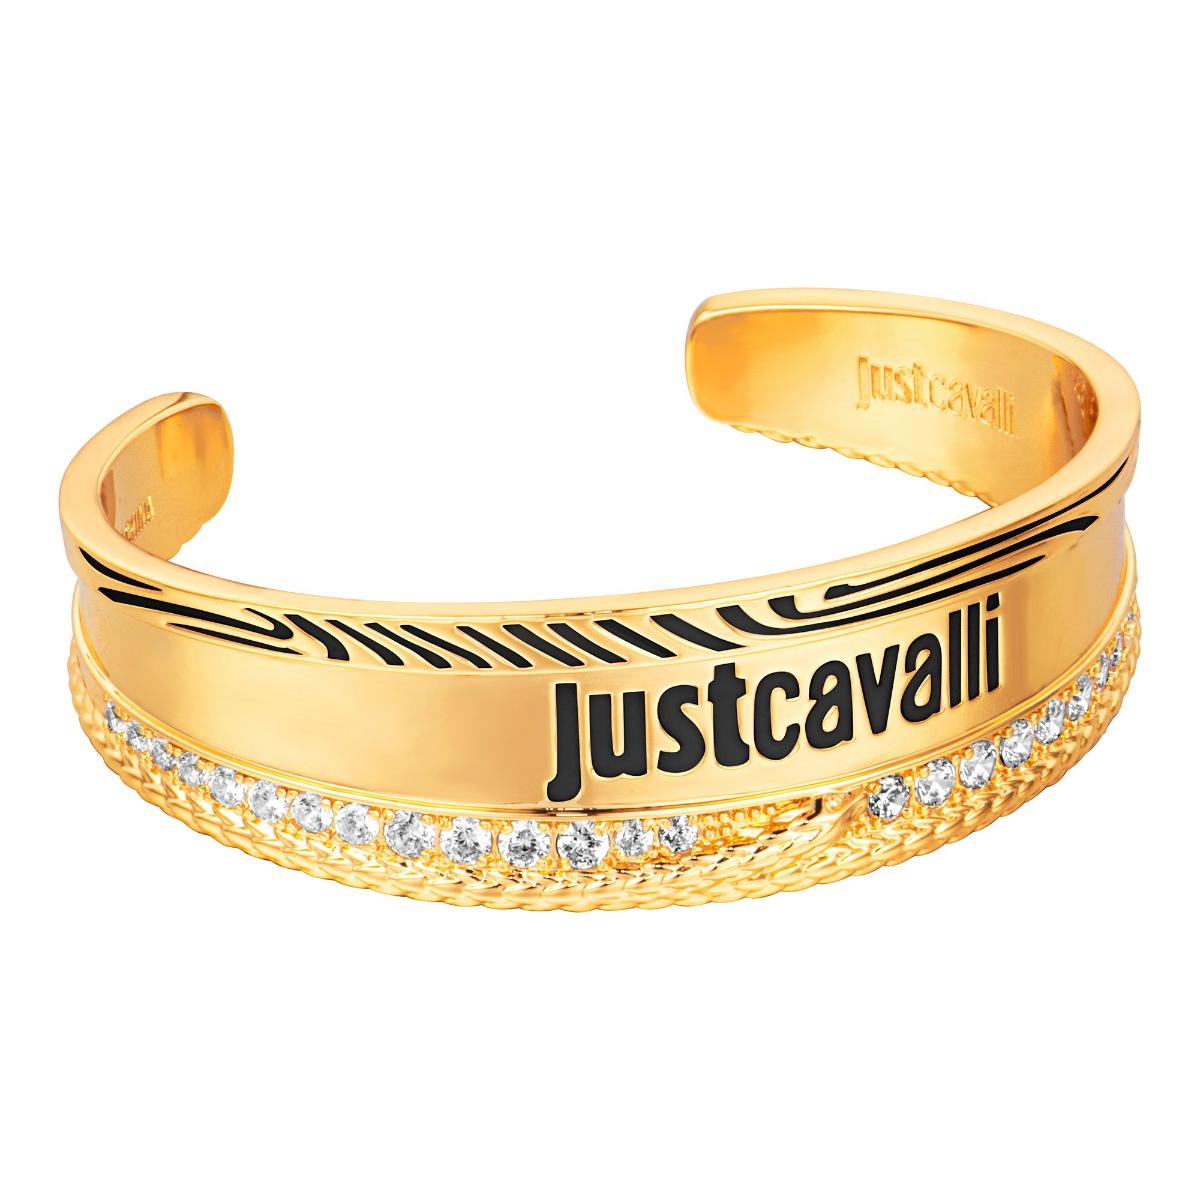 Just Cavalli JCFB00893200, Βραχιόλι, Ορείχαλκος, Χρυσό